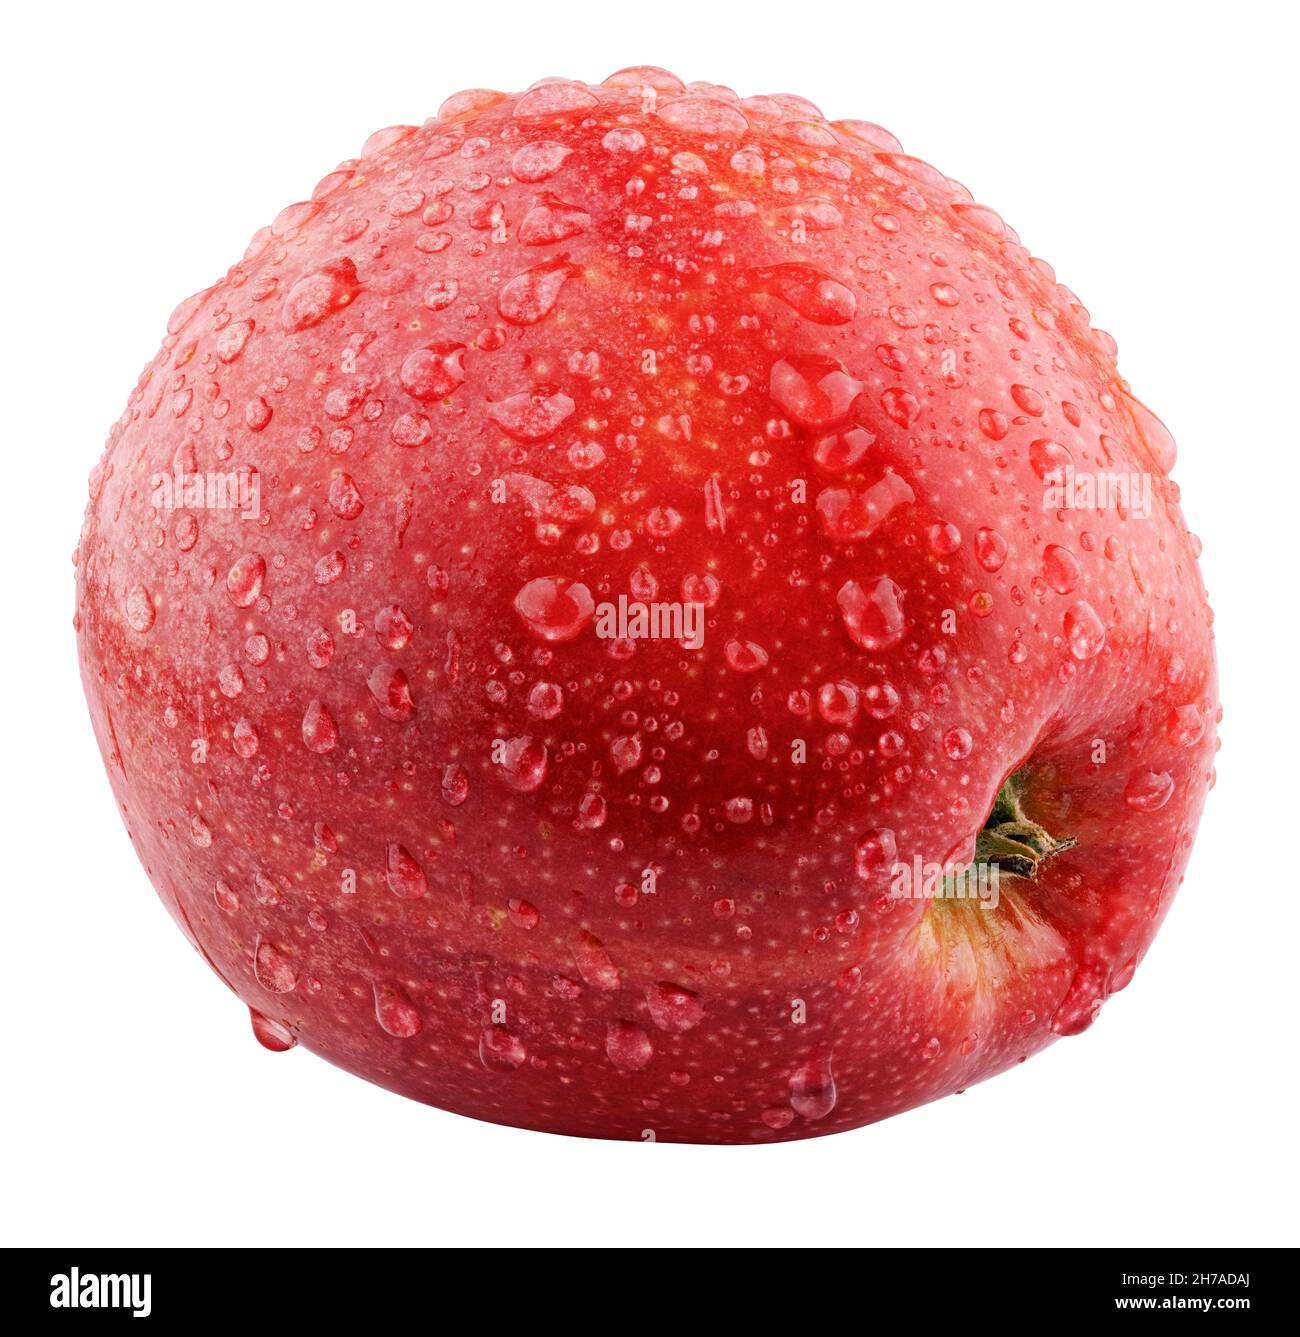 Singola mela rossa fresca bagnata con gocce isolate su sfondo bianco. Mela rossa con tracciato di ritaglio. Profondità di campo completa Foto Stock